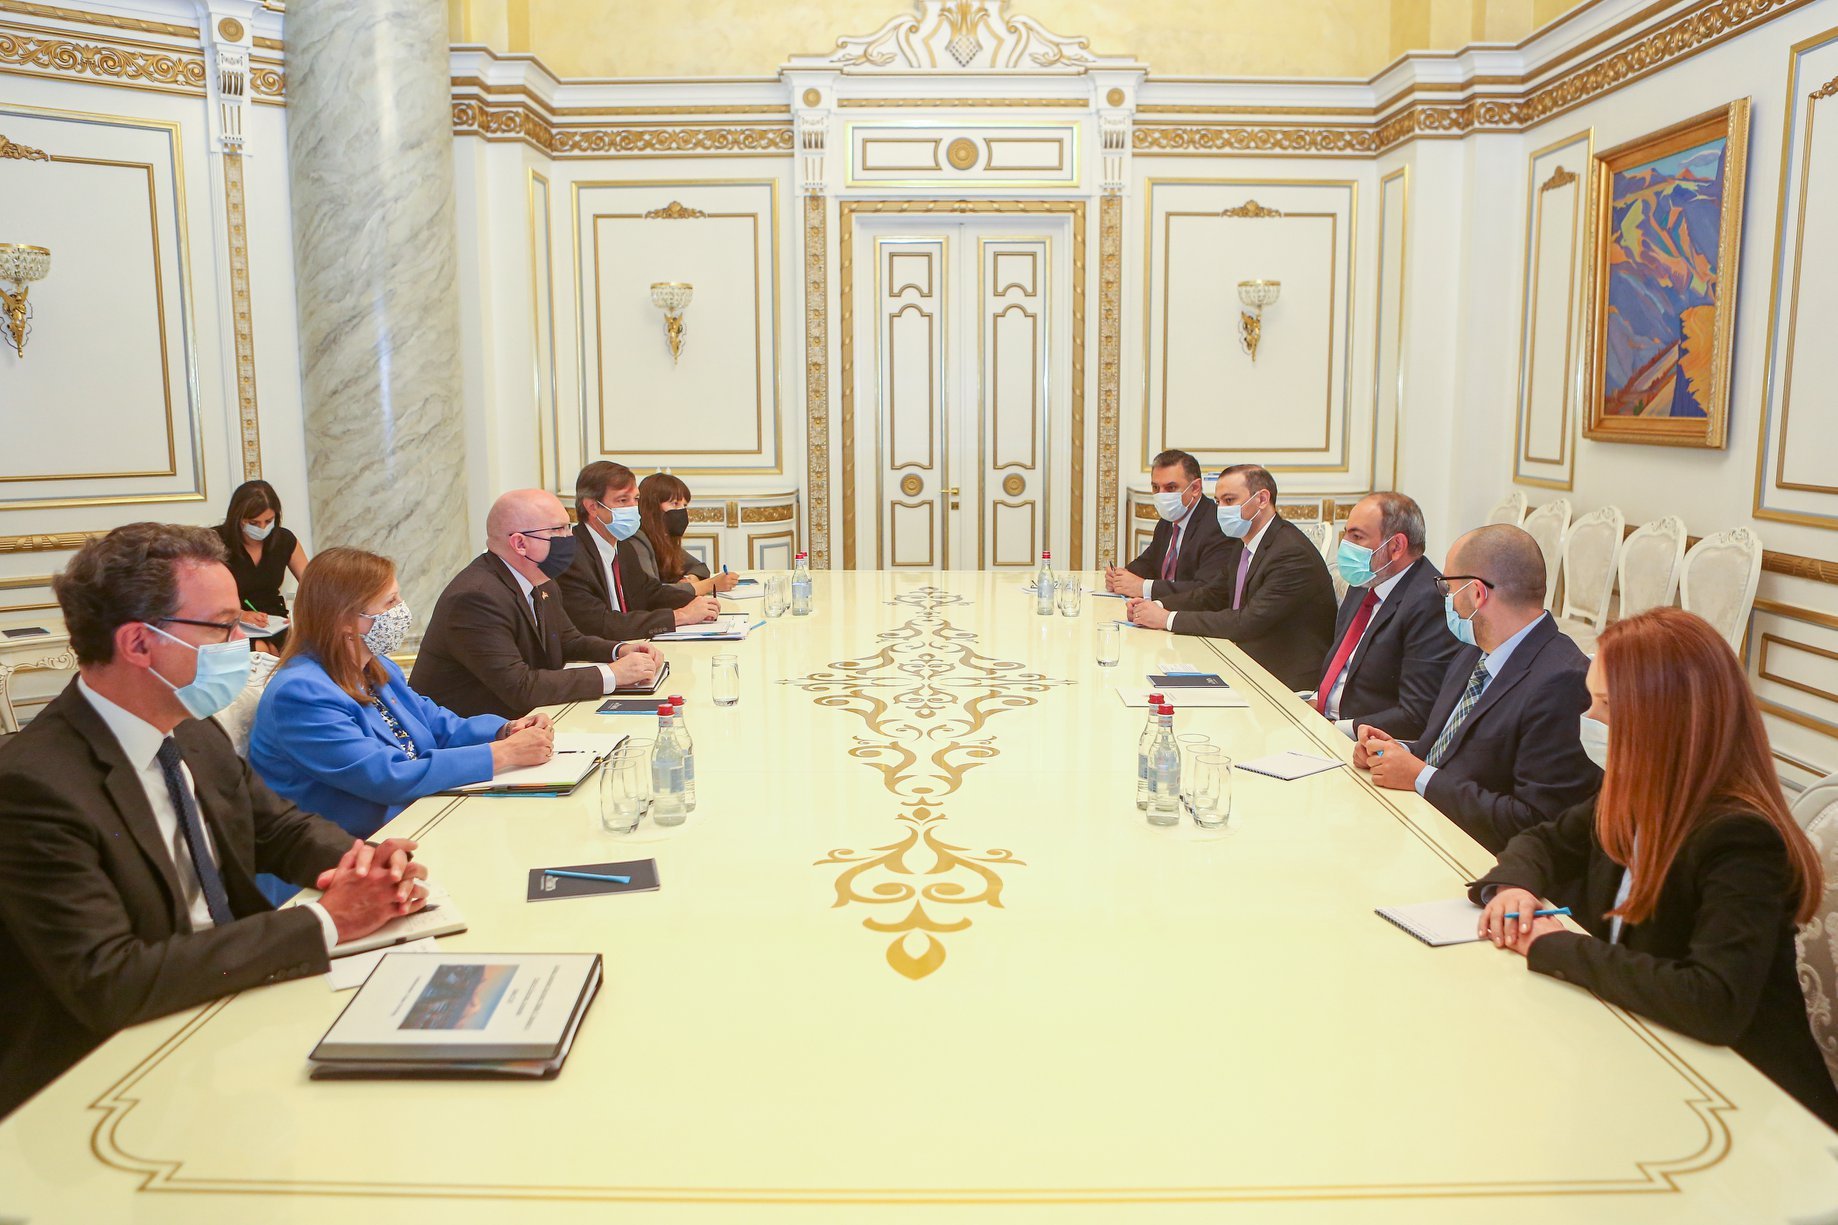 Միացյալ Նահանգները պատրաստ է ամրապնդել գործընկերությունը Հայաստանի հետ՝ հիմնվելով ընդհանուր ժողովրդավարական արժեքների վրա